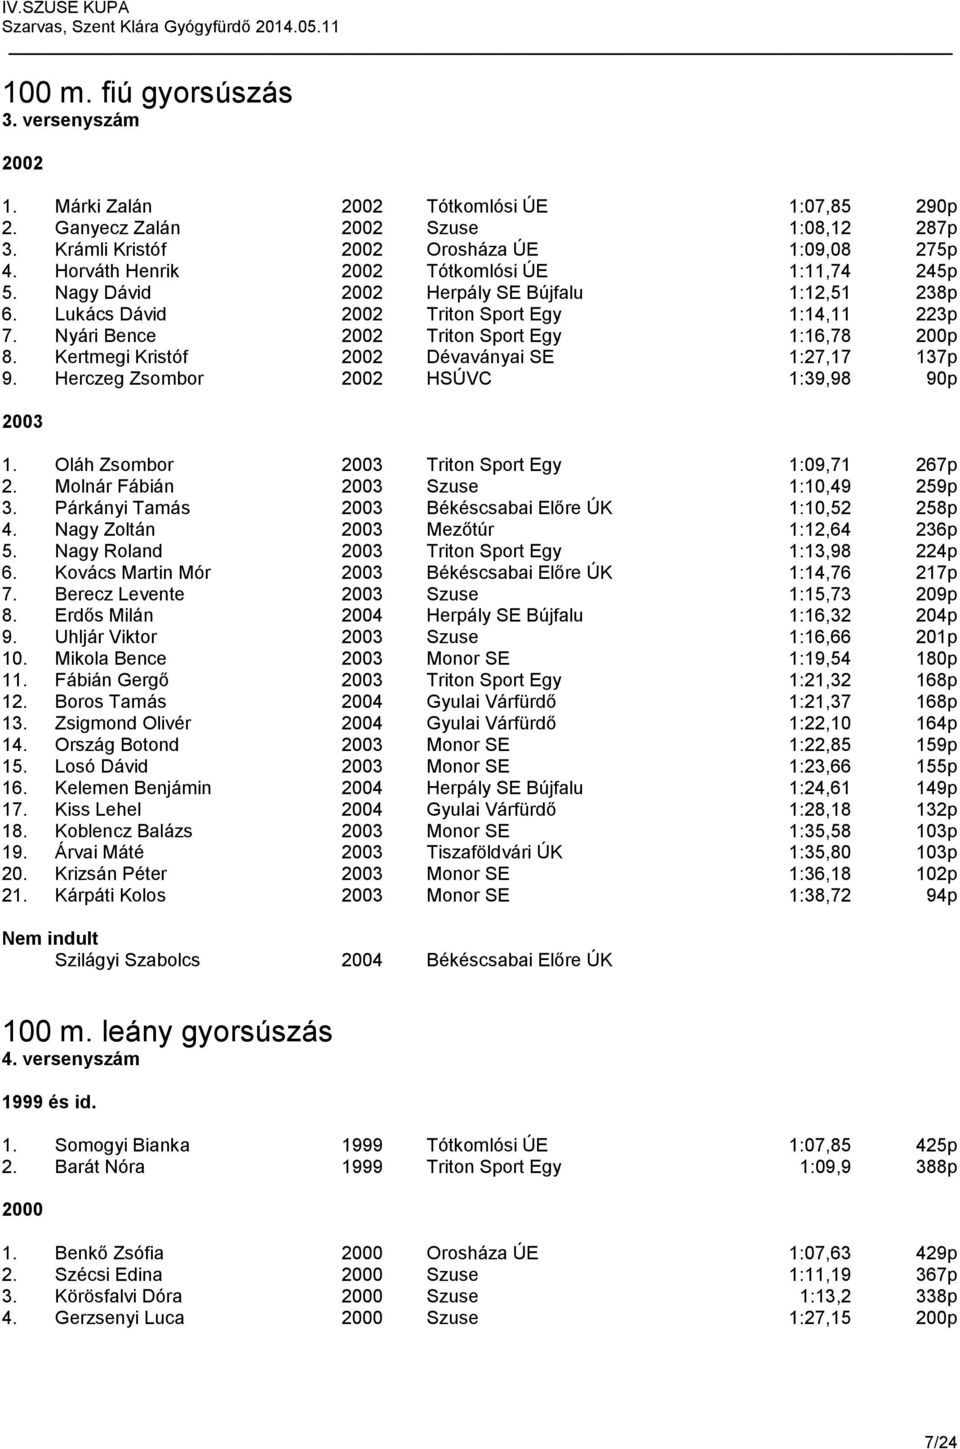 50 m. fiú gyorsúszás 1. versenyszám - PDF Ingyenes letöltés